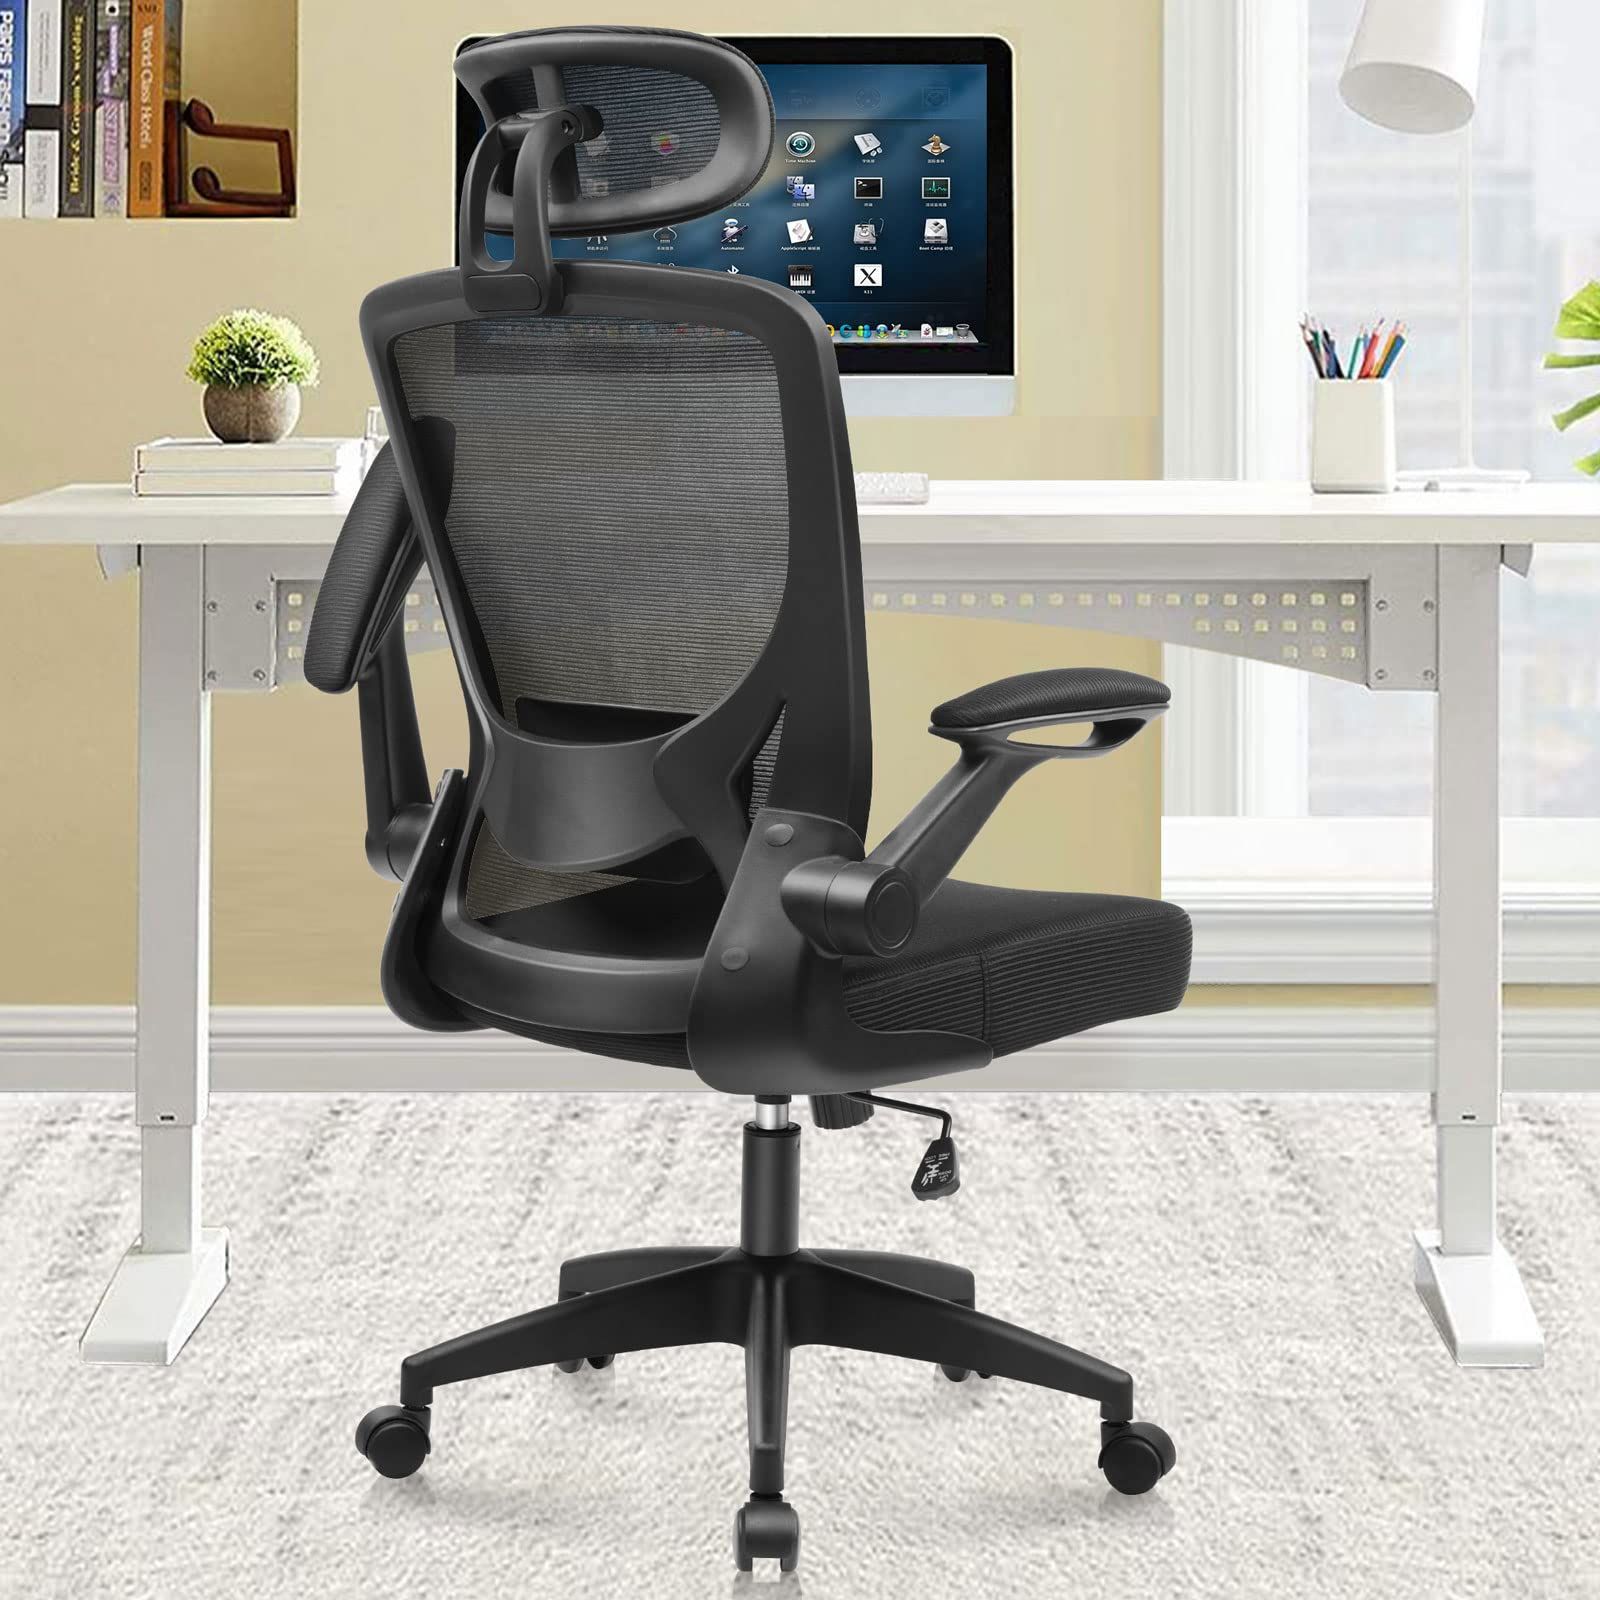 【色: ホワイト】KERDOM デスクチェア 椅子 パソコン テレワーク 椅子